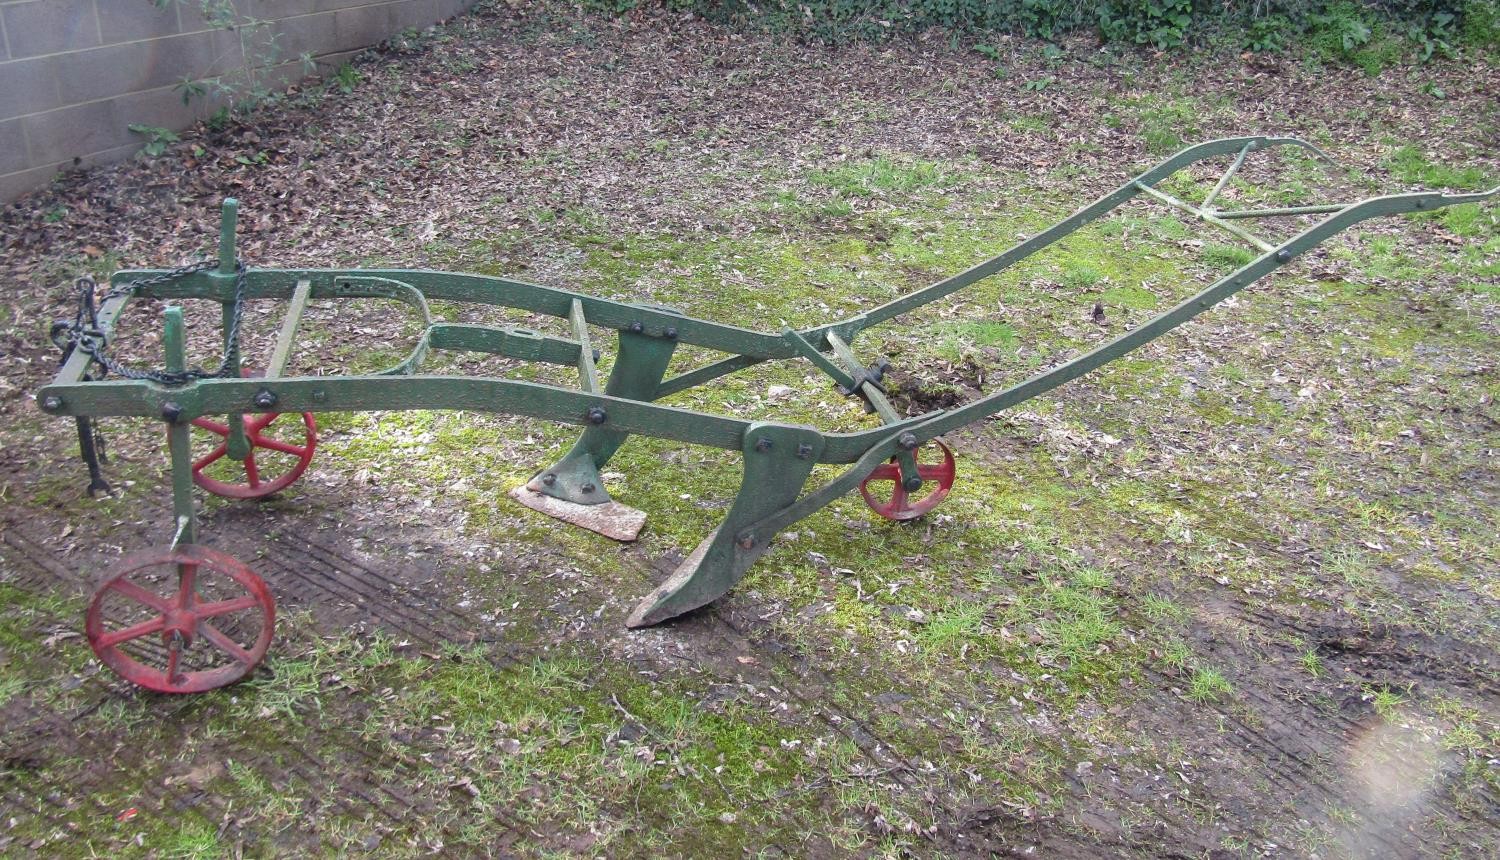 A three wheeled walk behind horse drawn plough 295 cm long